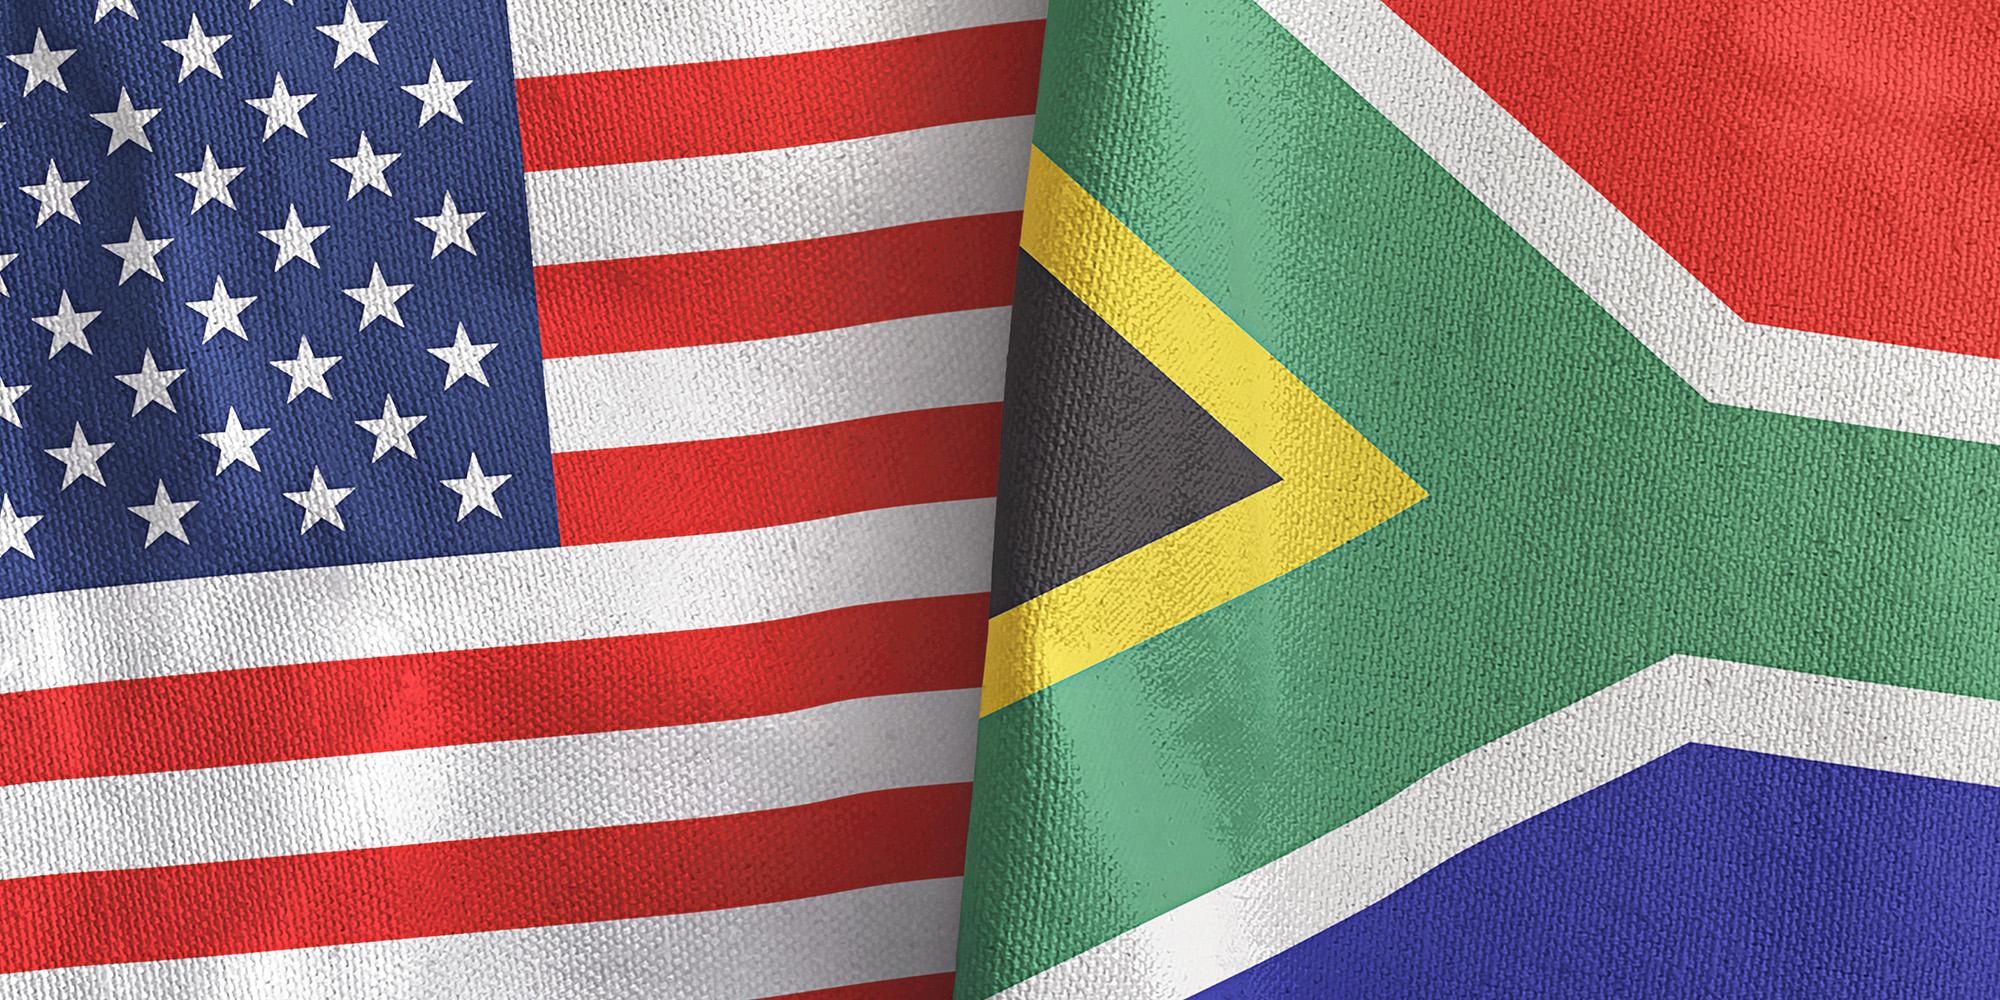 ما أبعاد تزايد الخلافات بين الولايات المتحدة وجنوب أفريقيا؟